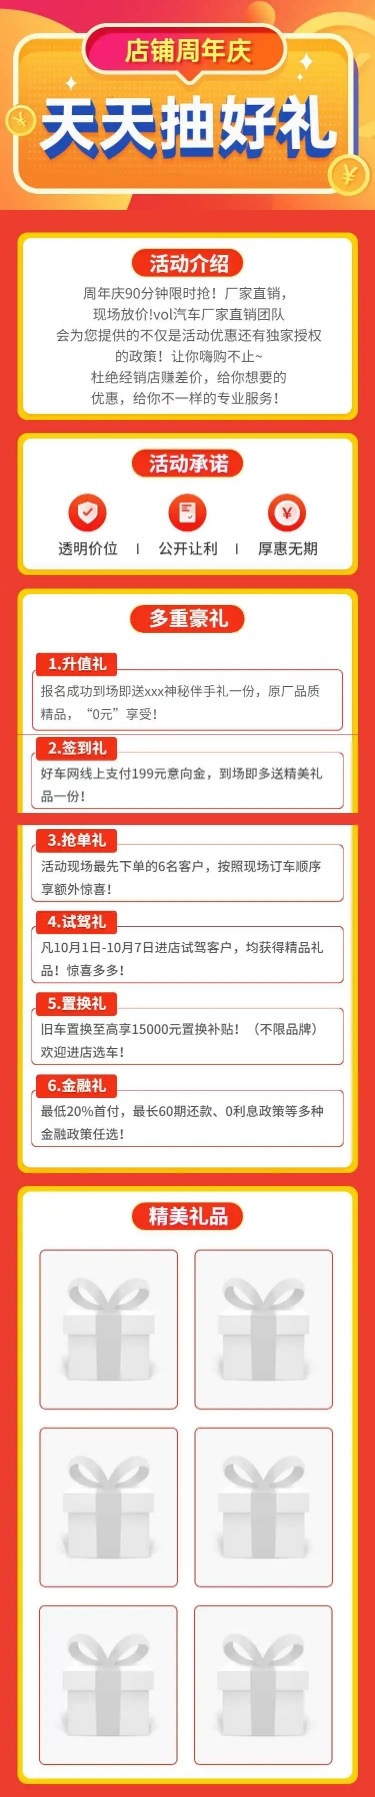 周年庆汽车4s店促销活动详情页